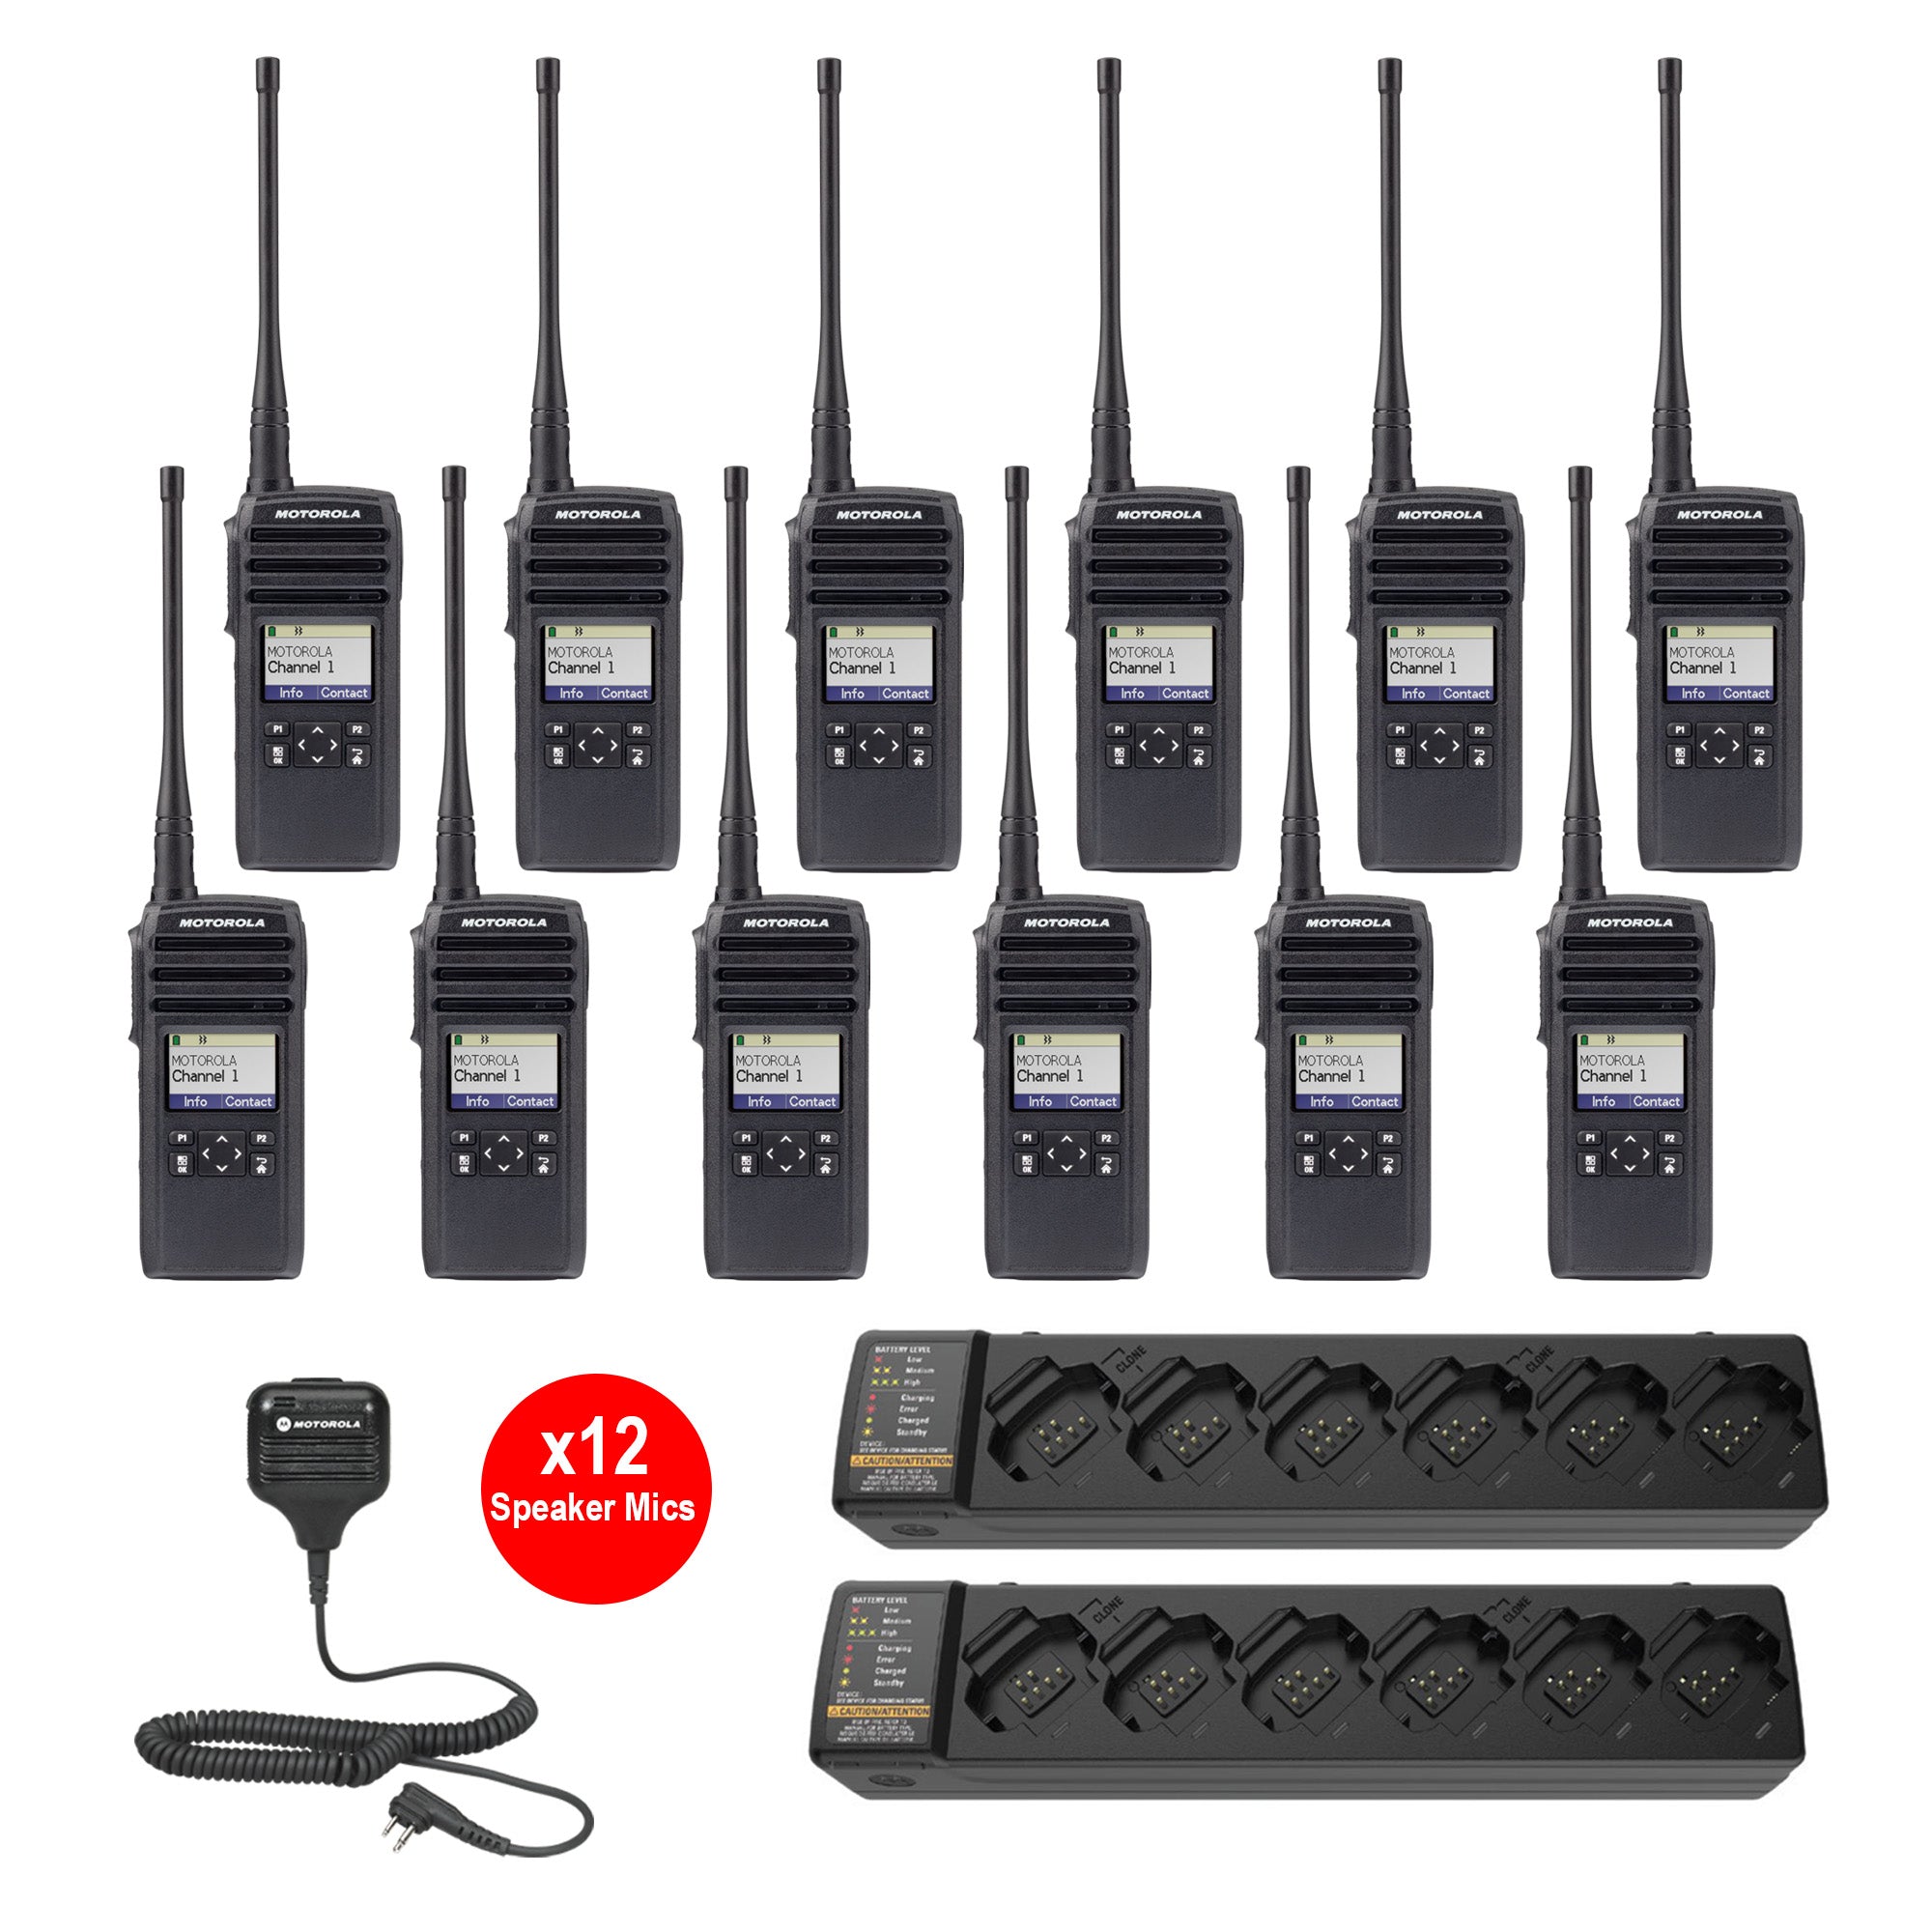 12 Pack of Motorola RMM2050 Two Way Radio Walkie Talkies - 4